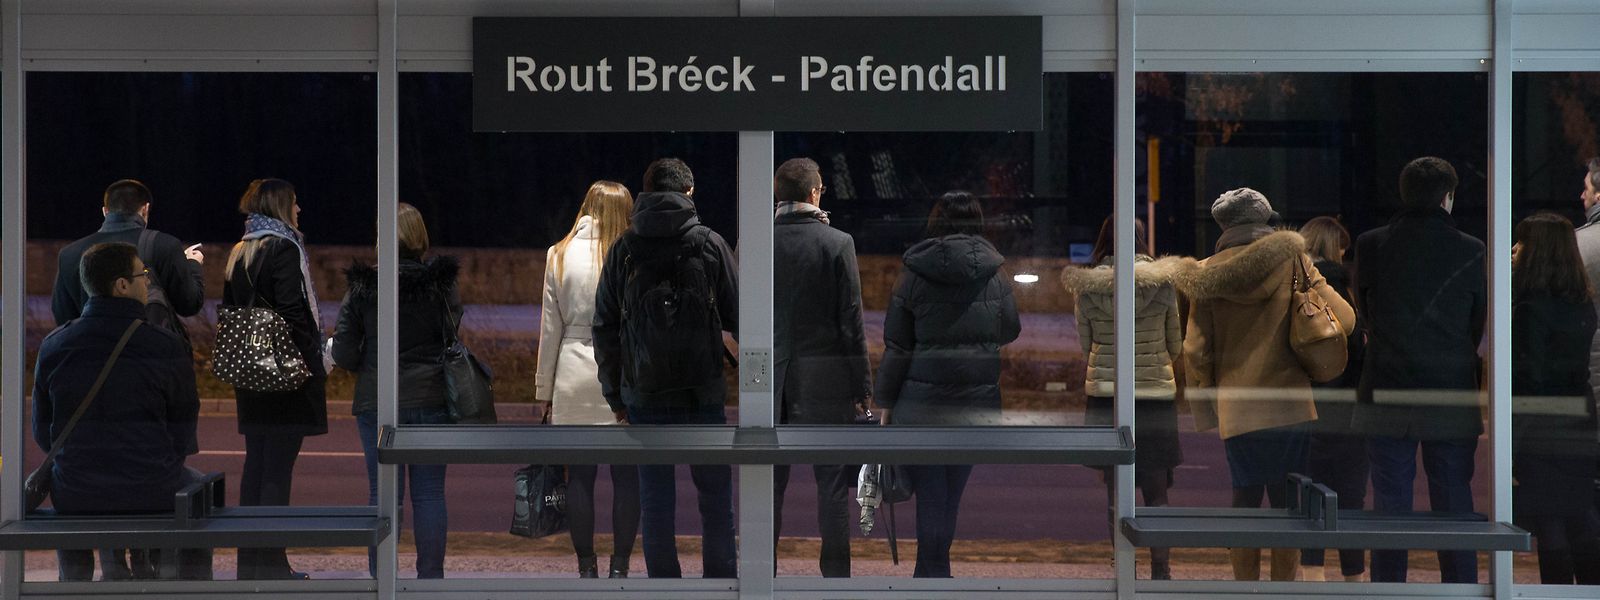 Der Vorfall ereignete sich an der Tramhaltestelle Rout Bréck - Pafendall. 